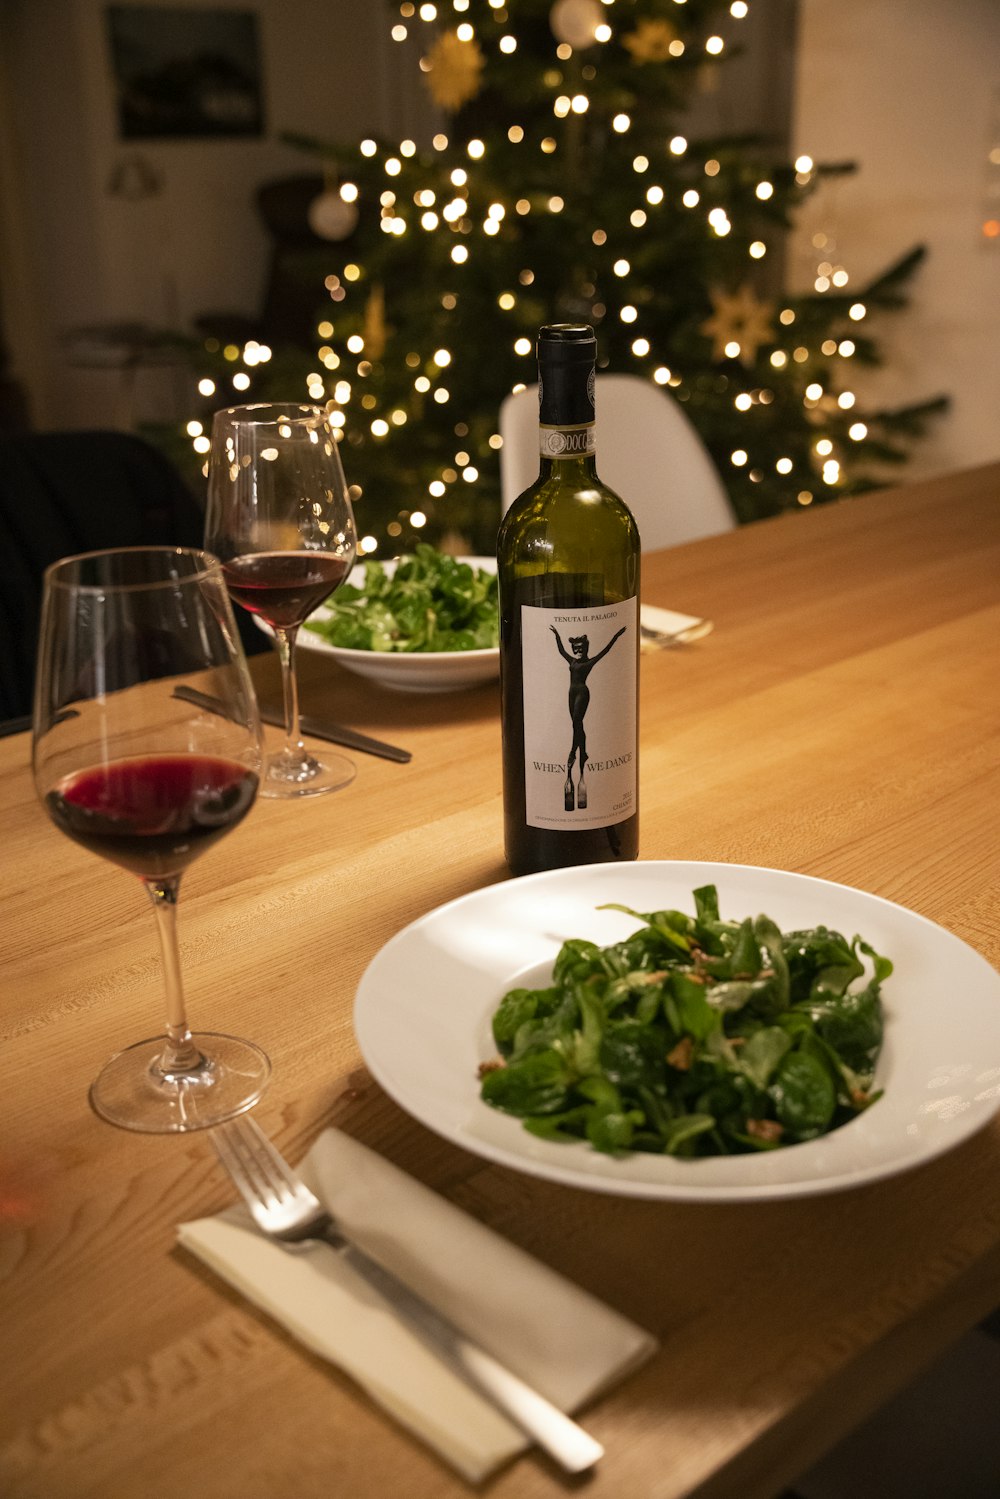 green wine bottle beside wine glass on table